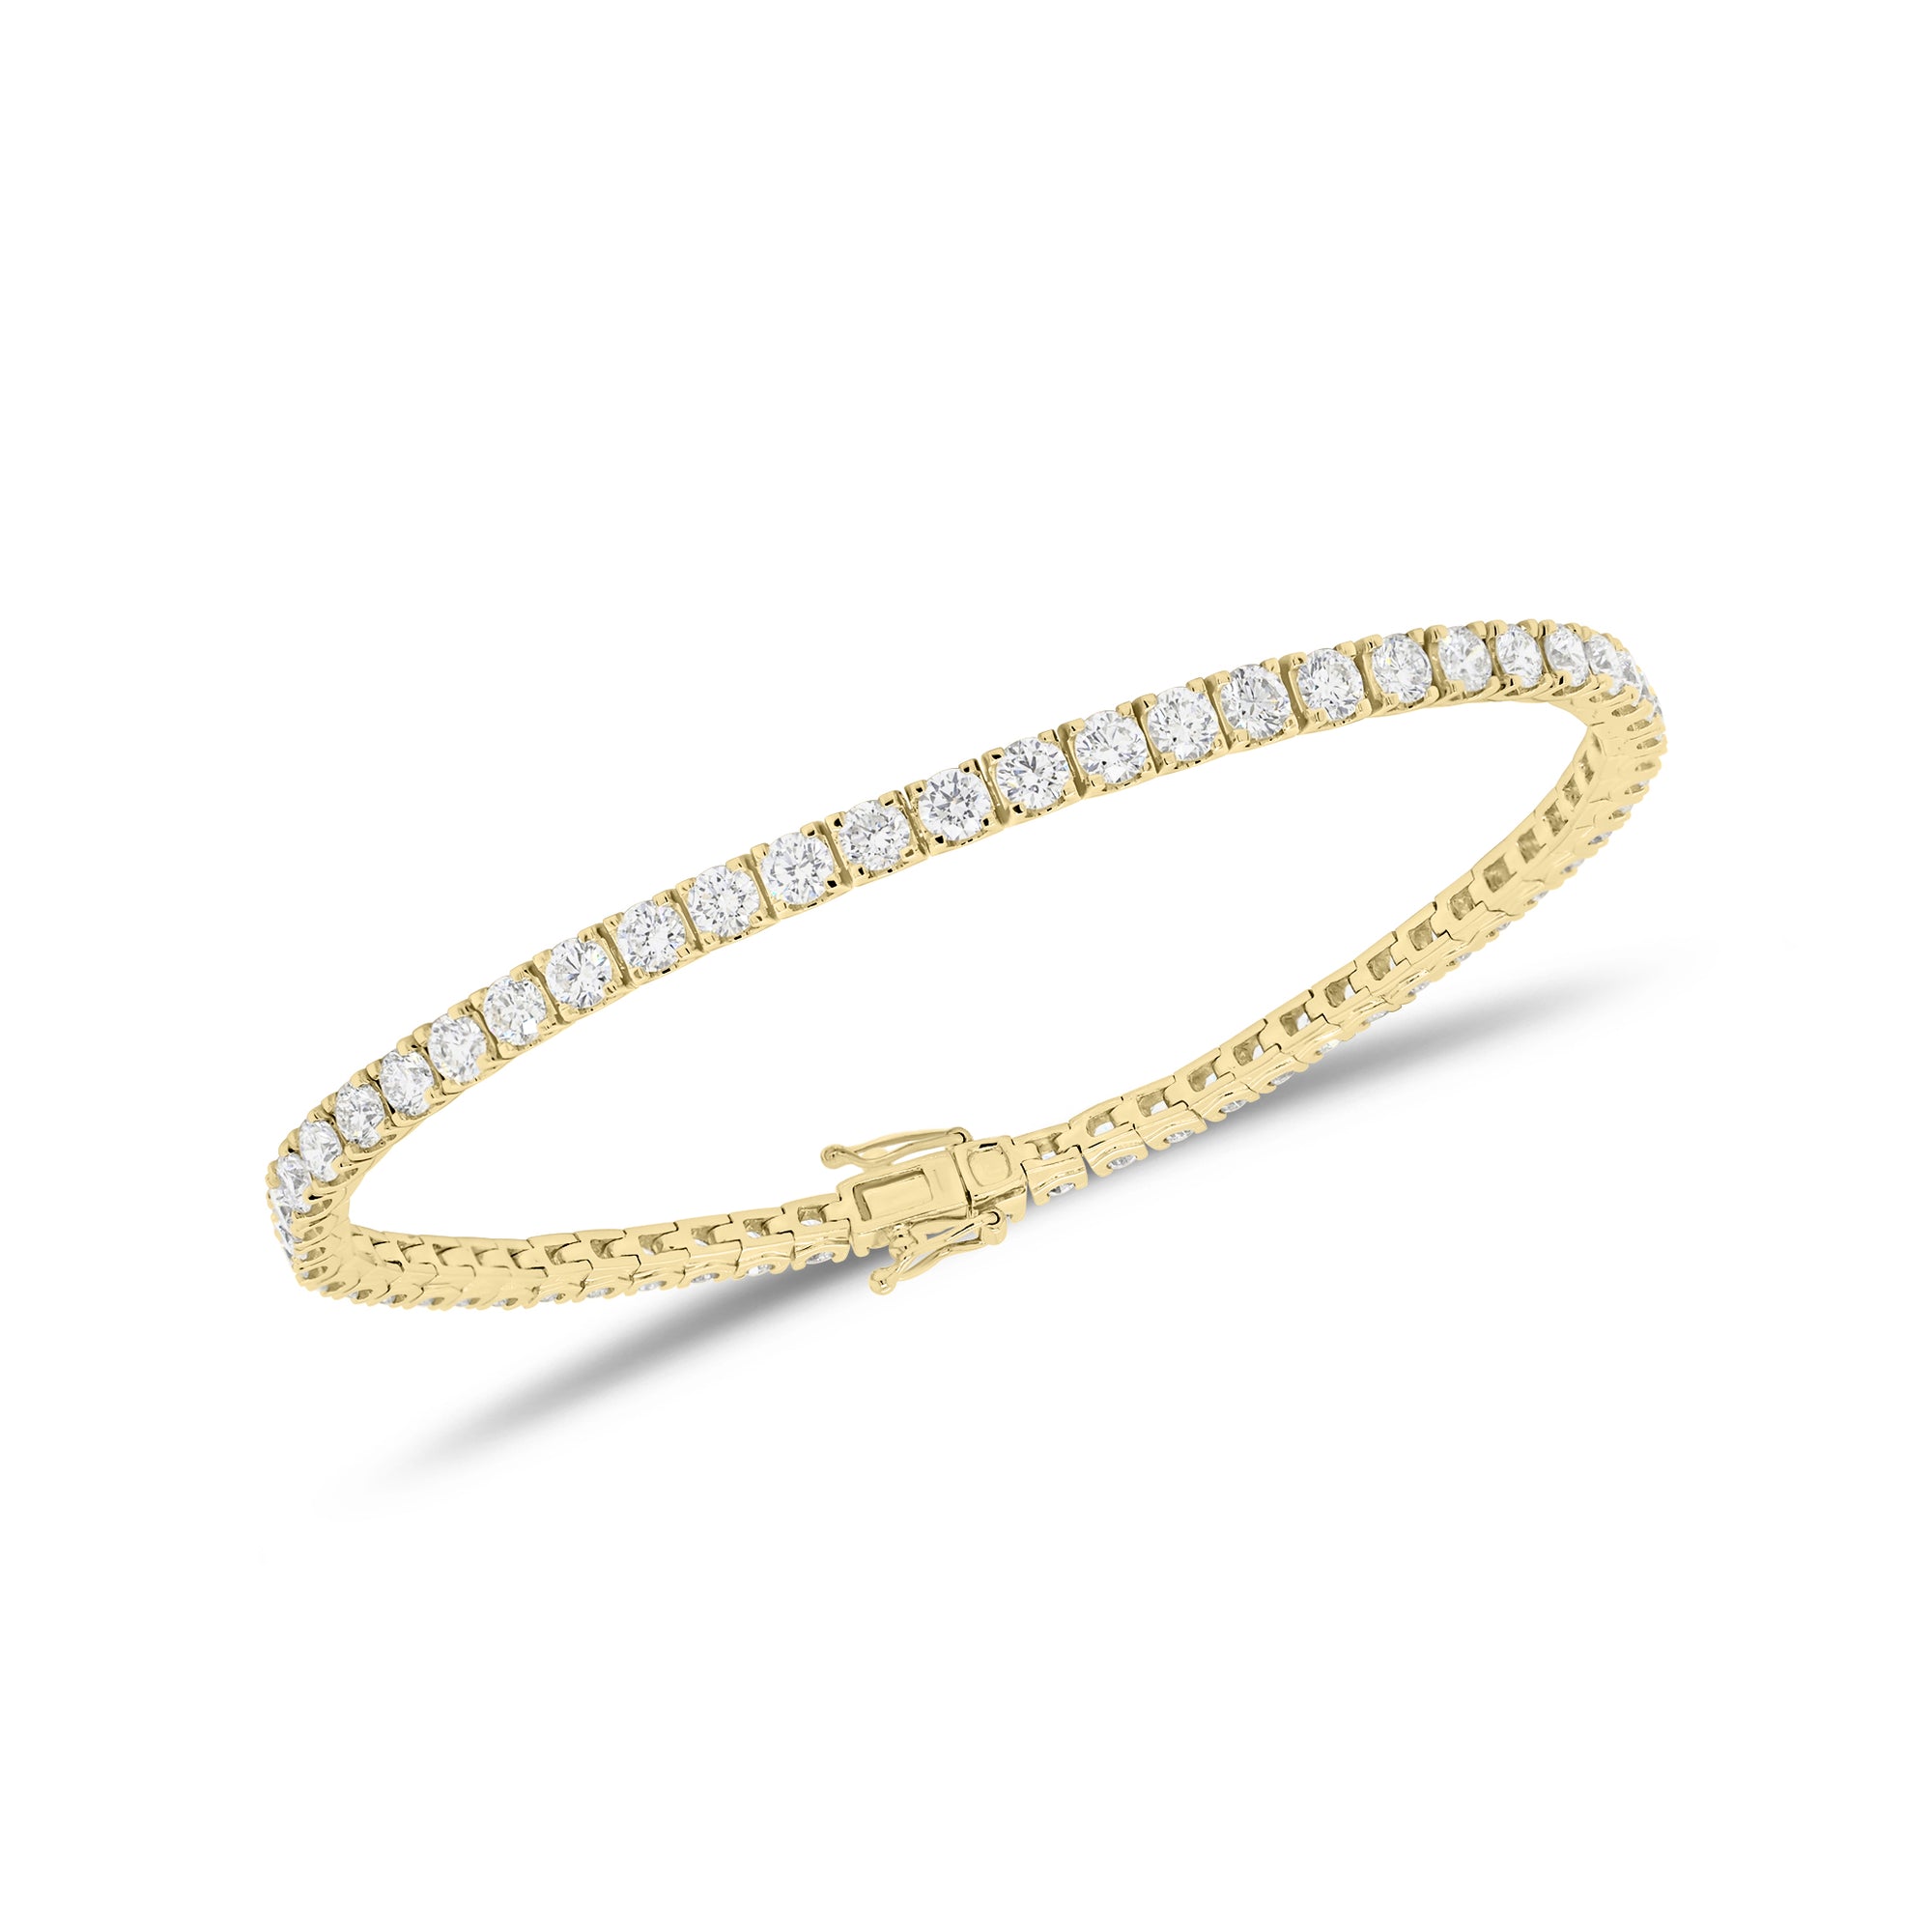 4.60 ct Diamond Tennis Bracelet - 18K gold weighing 10.80 grams - 59 round diamonds weighing 4.60 carats